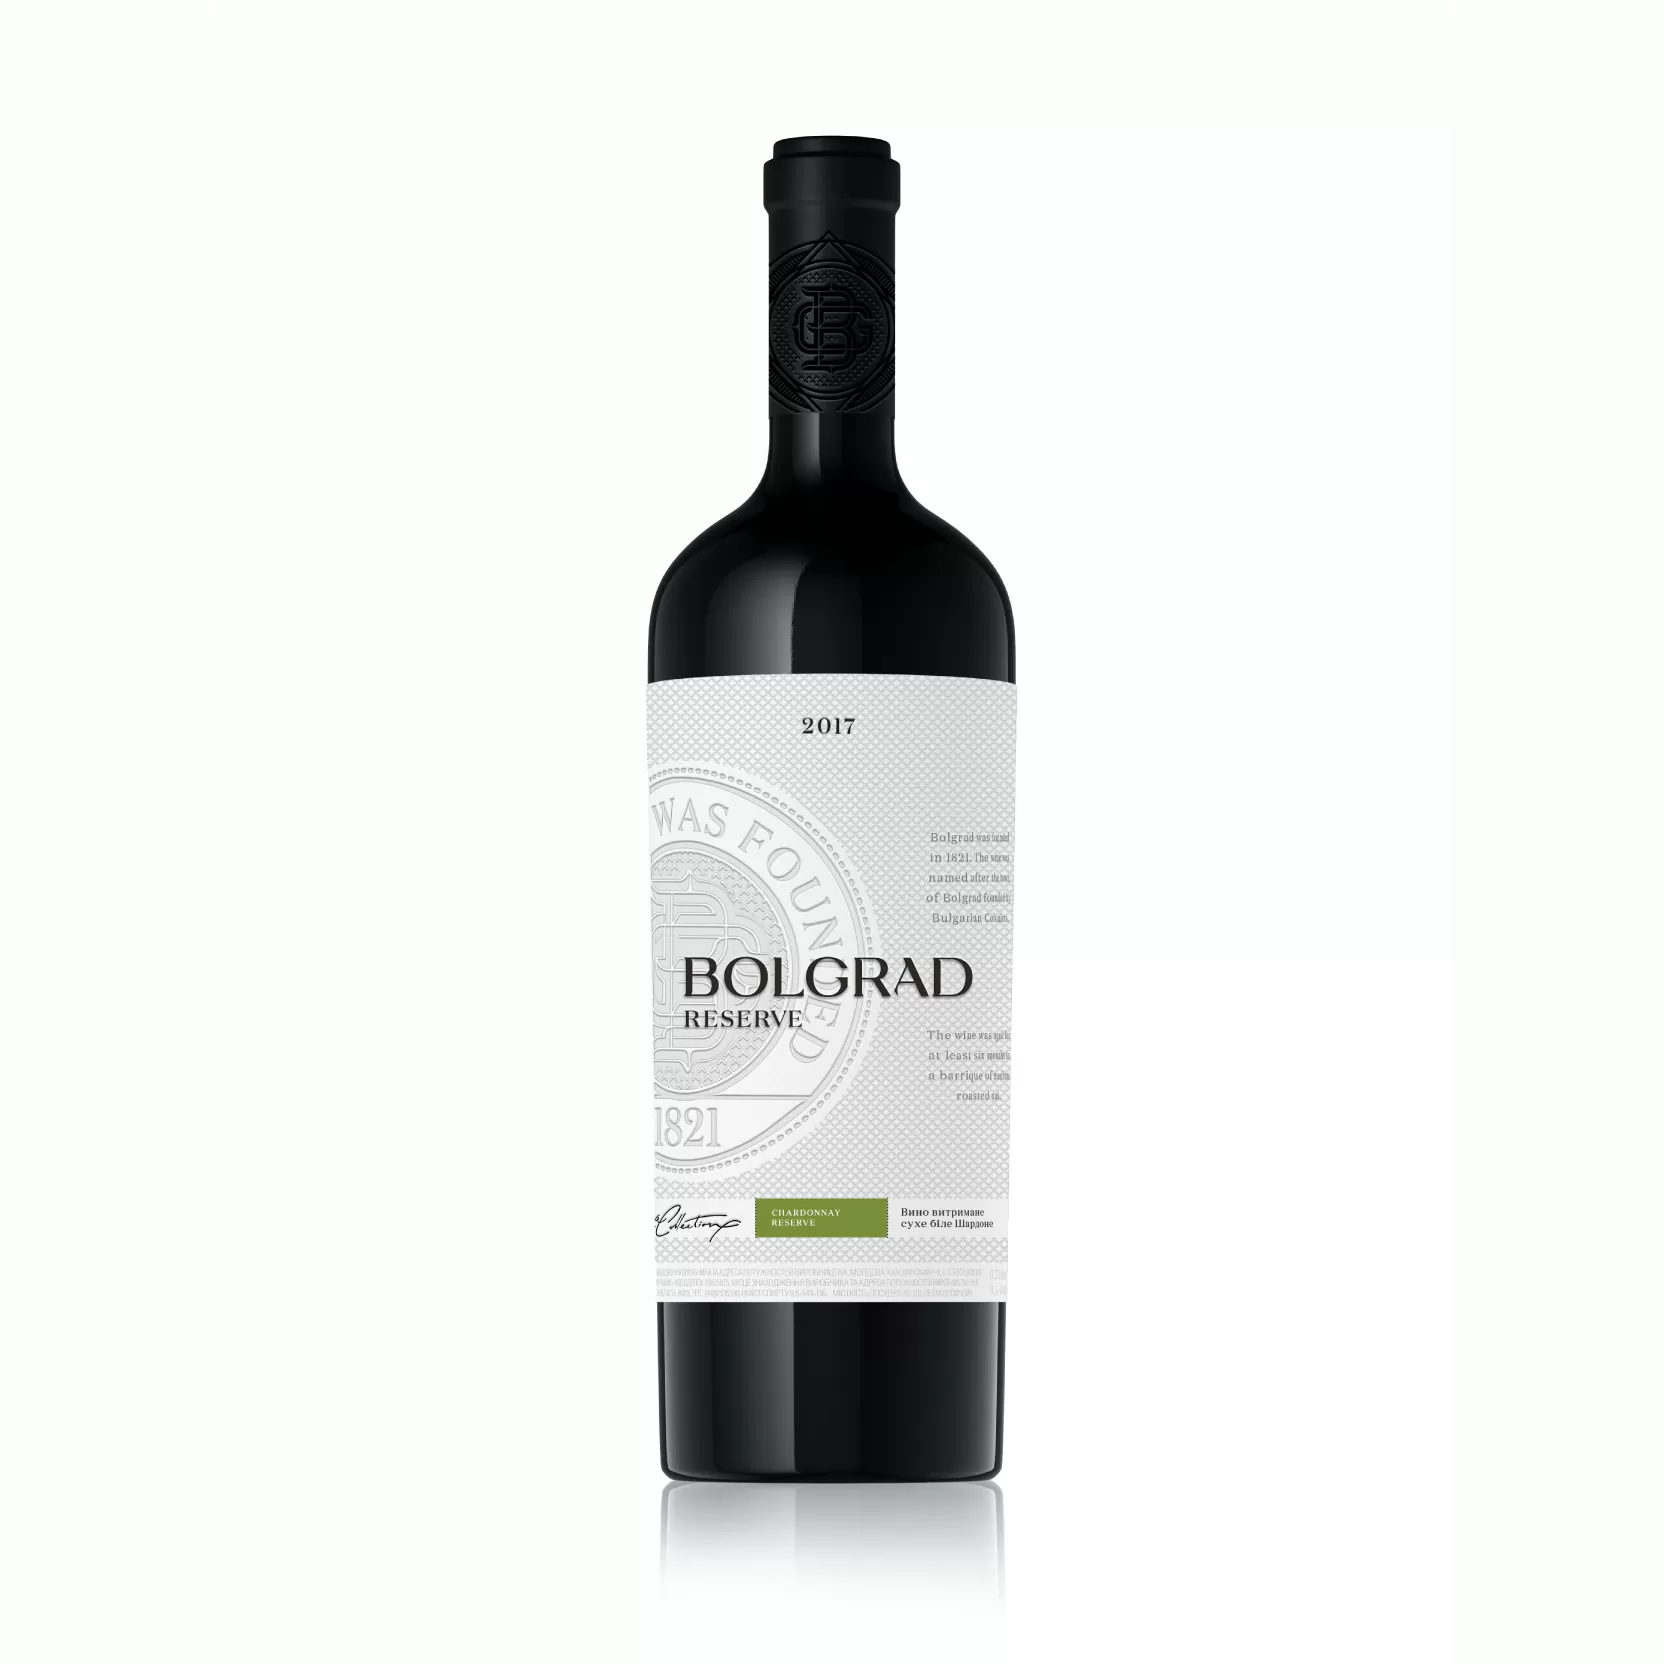 Вино Шардоне сухое белое 0,75л (1278) 13,2%